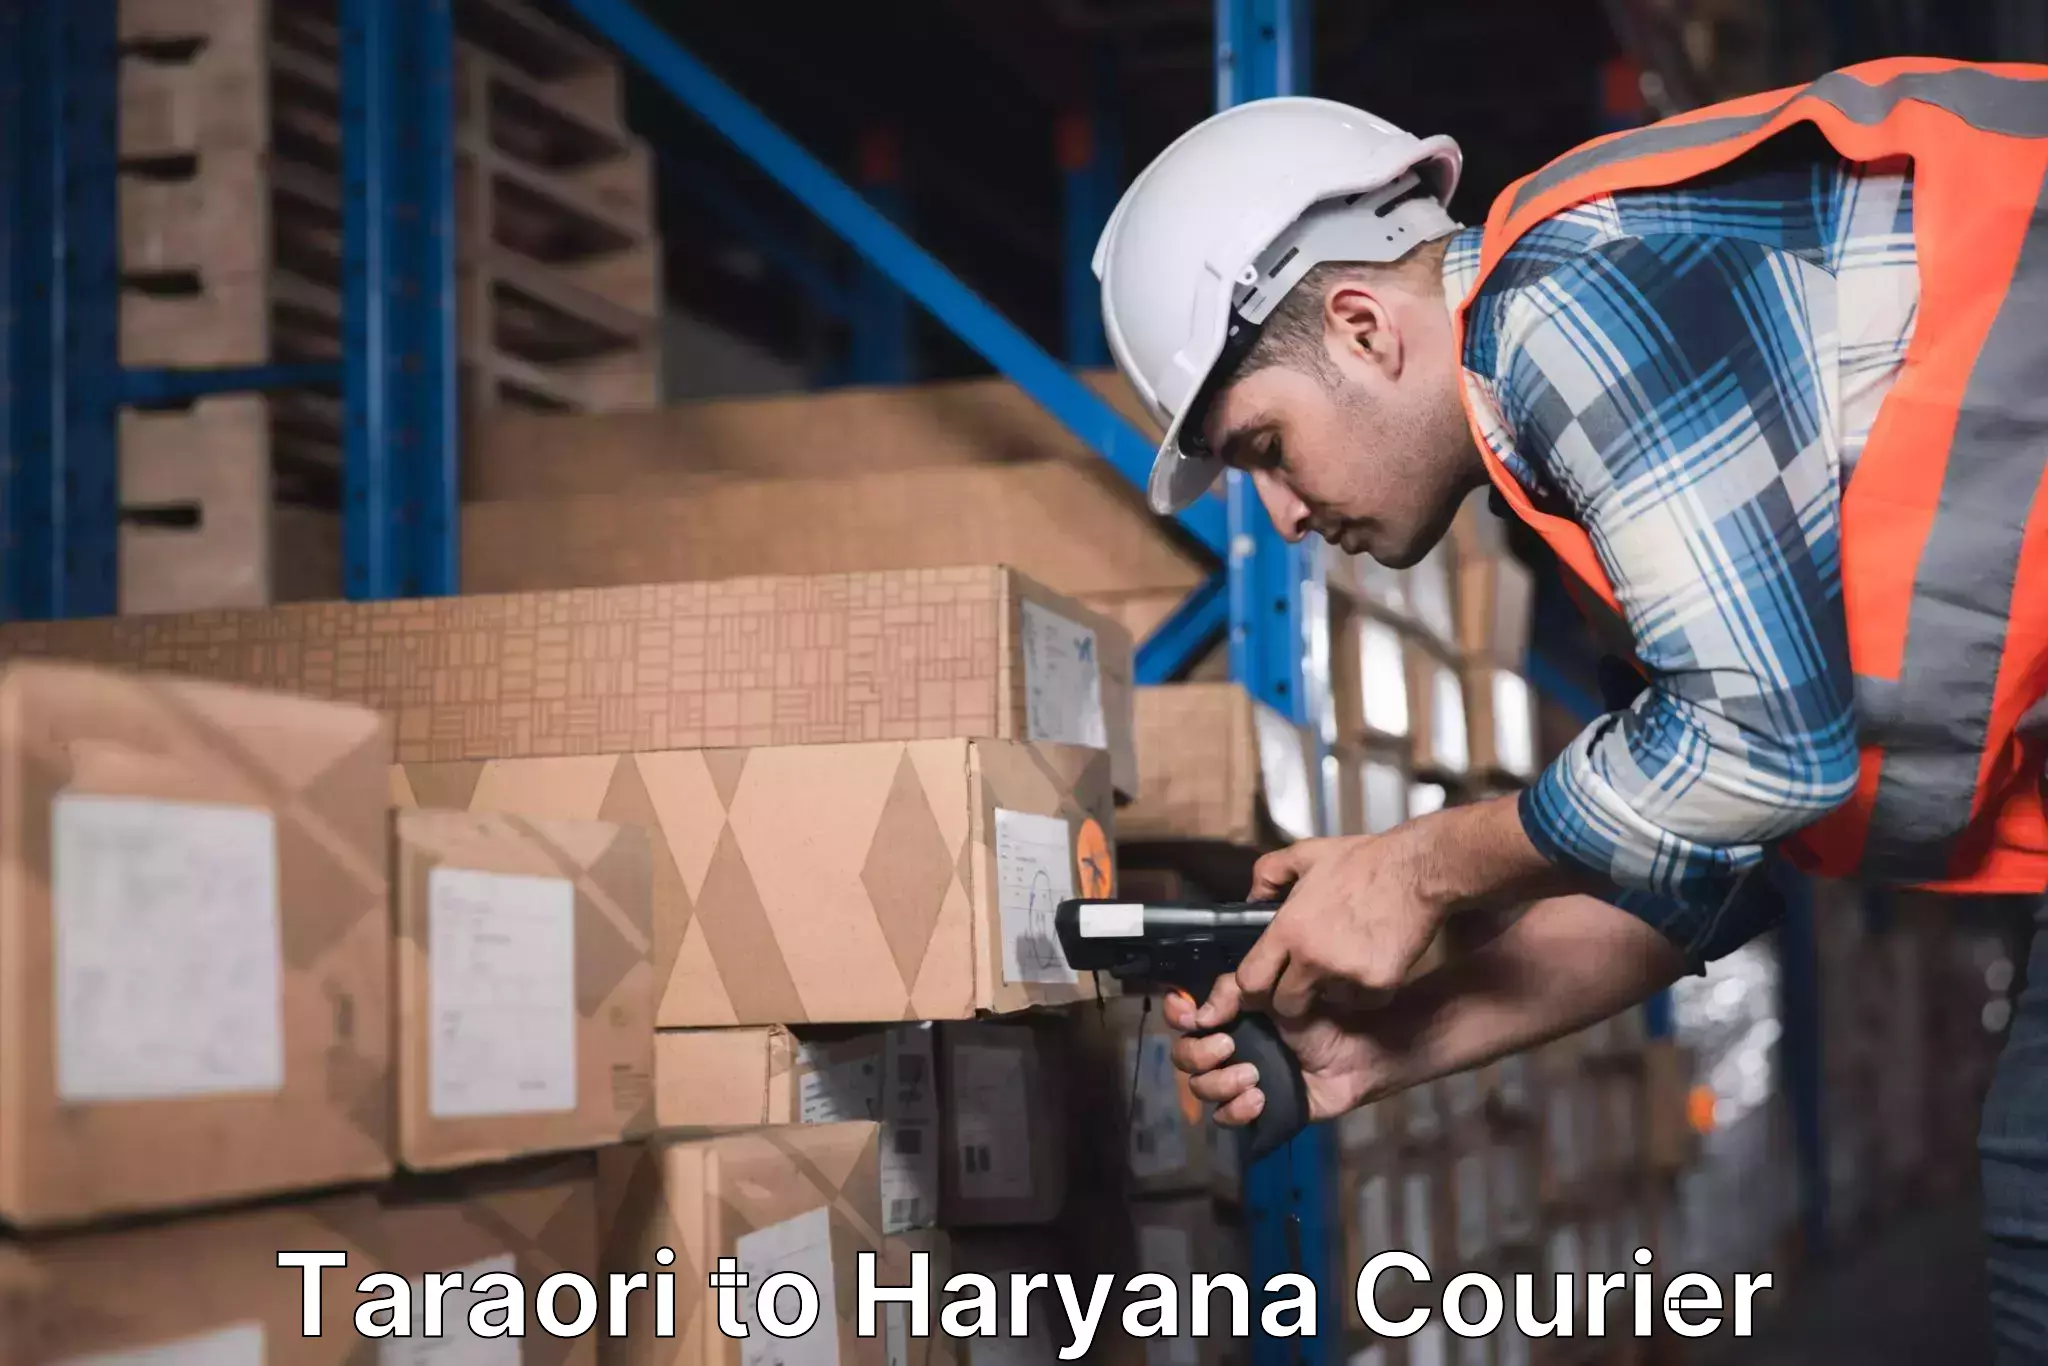 Nationwide shipping coverage Taraori to Chaudhary Charan Singh Haryana Agricultural University Hisar